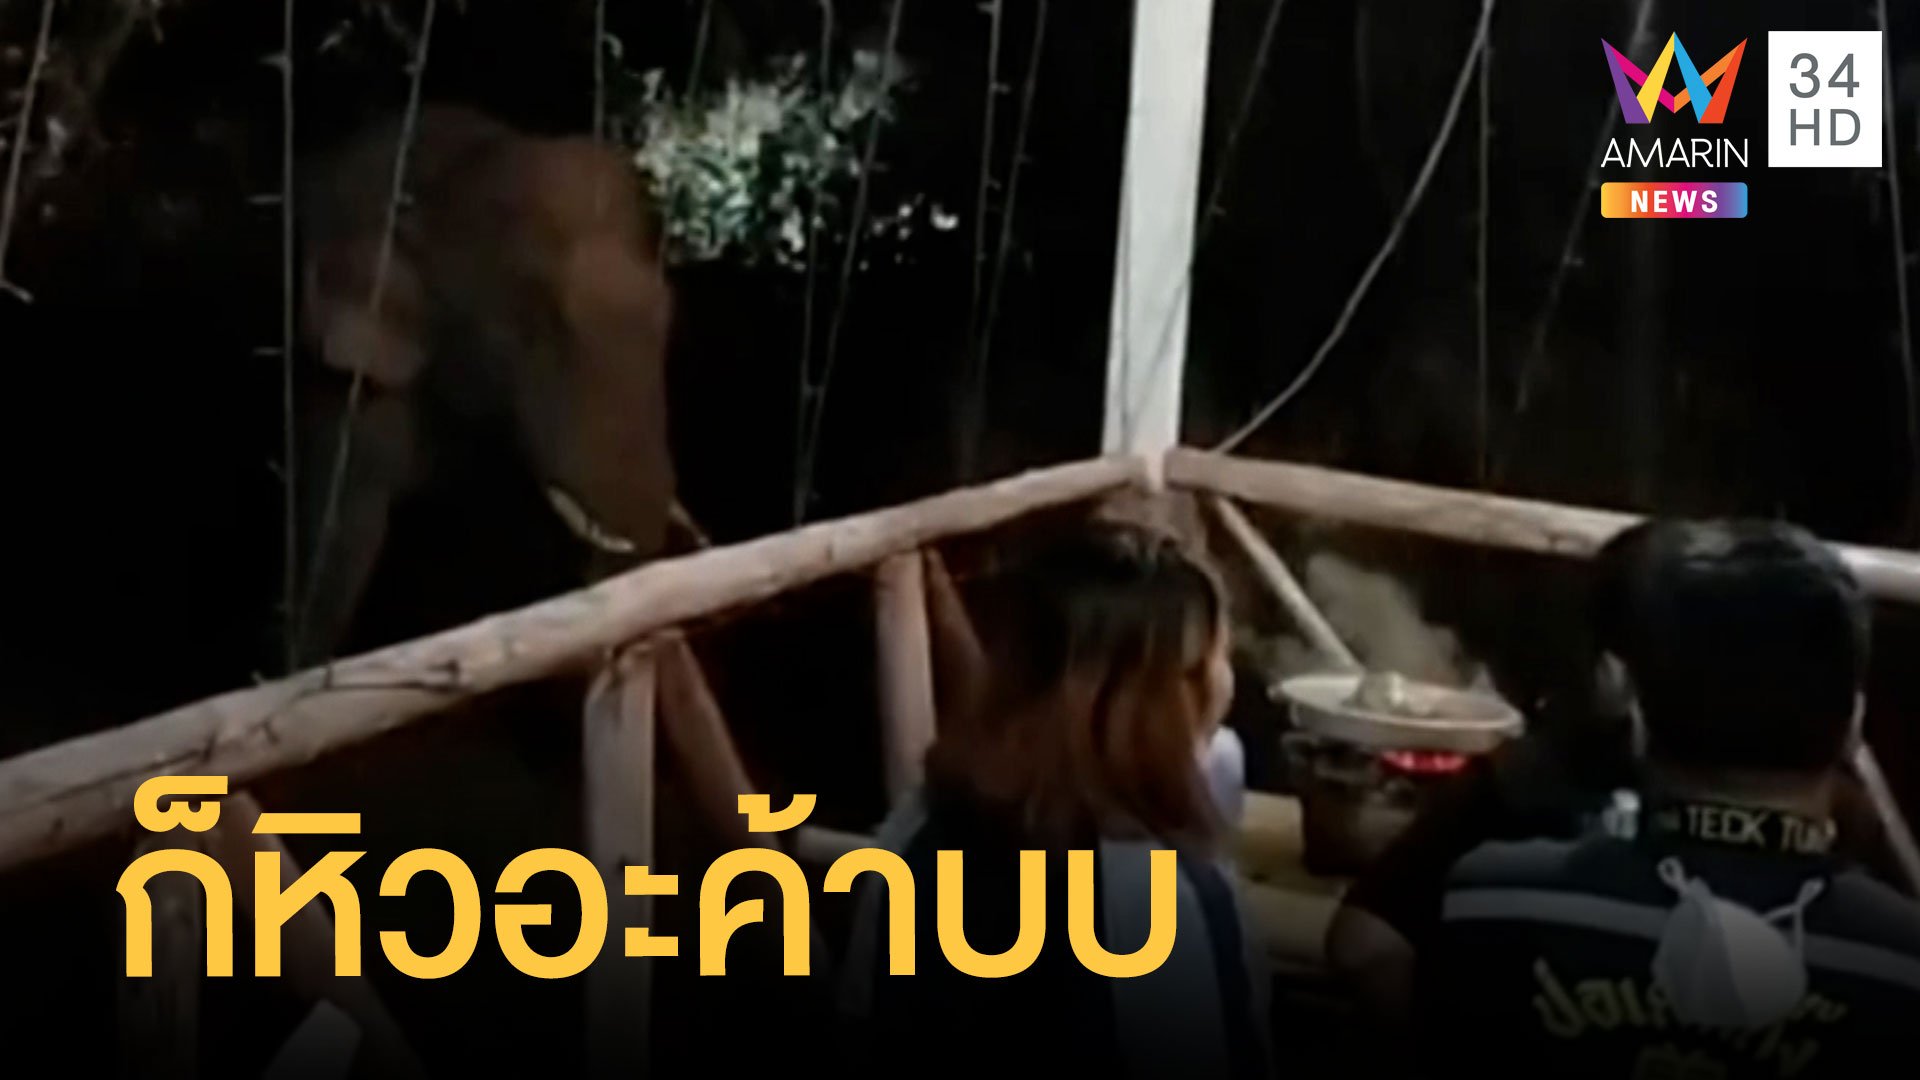 ช้างป่าบุกร้านหมูกระทะ ลูกค้าถึงกับวงแตก | ข่าวอรุณอมรินทร์ | 20 ธ.ค. 64 | AMARIN TVHD34